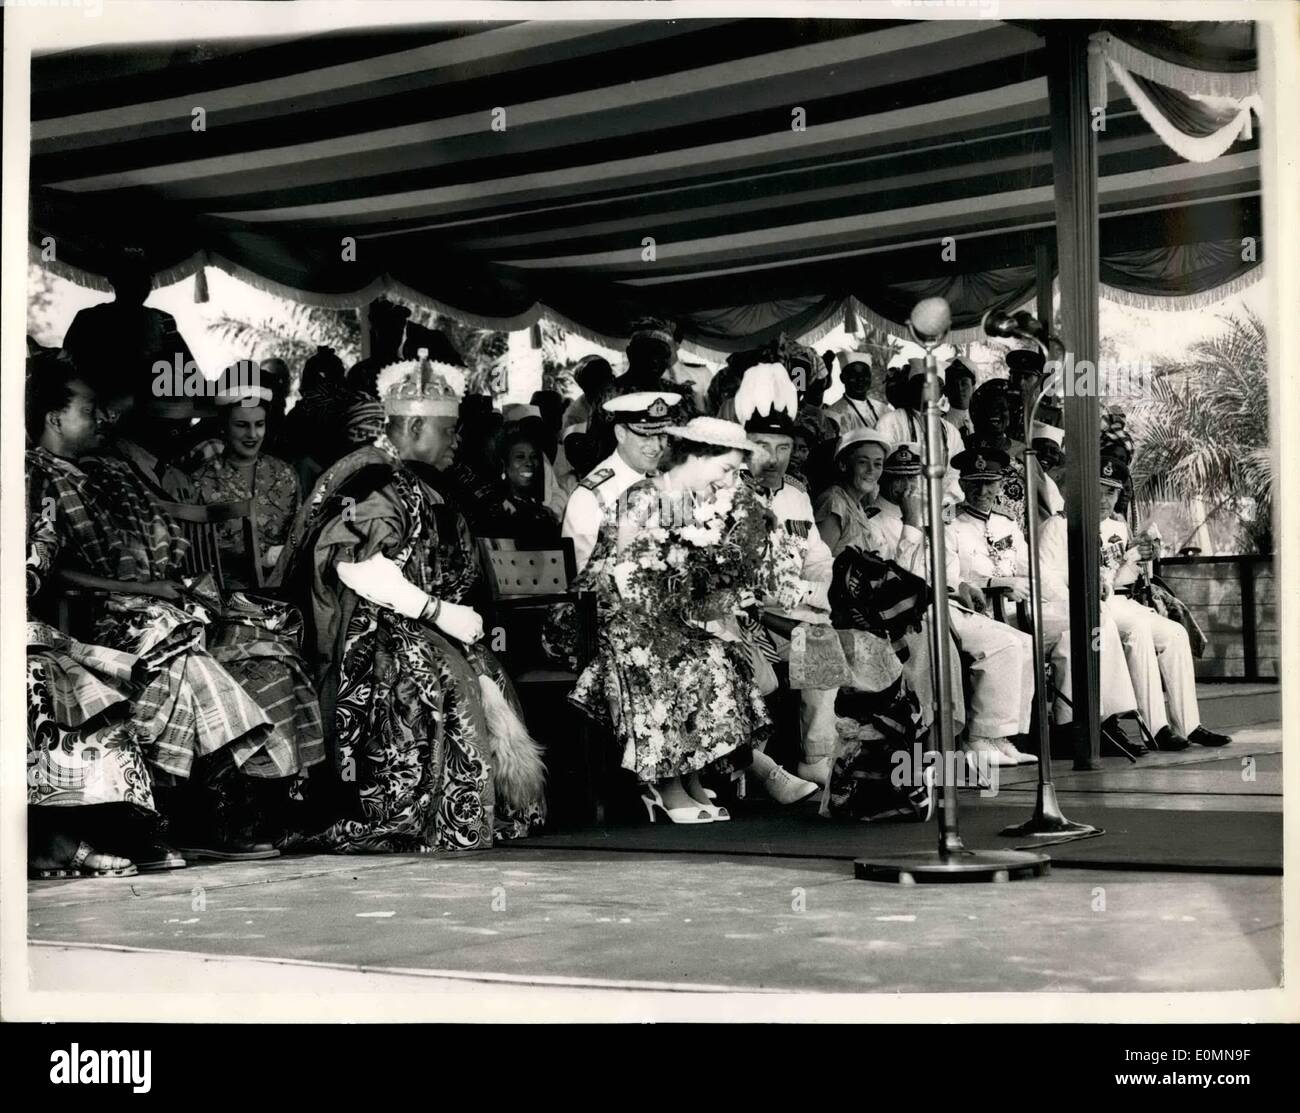 1. Januar 1956 - kommt QUEEN IN NIGERIA... FOLOSHADE PRÄSENTIERT EINEN BLUMENSTRAUß... KEYSTONE-FOTOSHOWS: - HM TRE Königin lehnt sich nach vorne zu Strauß aus drei FOLOSHADE LAMSON Einjahrestochter des Vorsitzenden des Rates erhält - während der offiziellen Begrüßung der Königin bei ihrer Ankunft in LA008, Nigeria. Das kleine Mädchen - gekleidet in Yoruba tribal Kostüm - einen riesigen Turban, die fast ihr verschlungen war so überwältigt, mit Nervouenees, die sie fast über - gestürzt, aber die Königin Manageded, "den Strauß zu retten". Links ist der Chef von Lagos OBA ADTNIJI. ADELLE II - wer eine Krone waren- und megnifioient Stockfoto